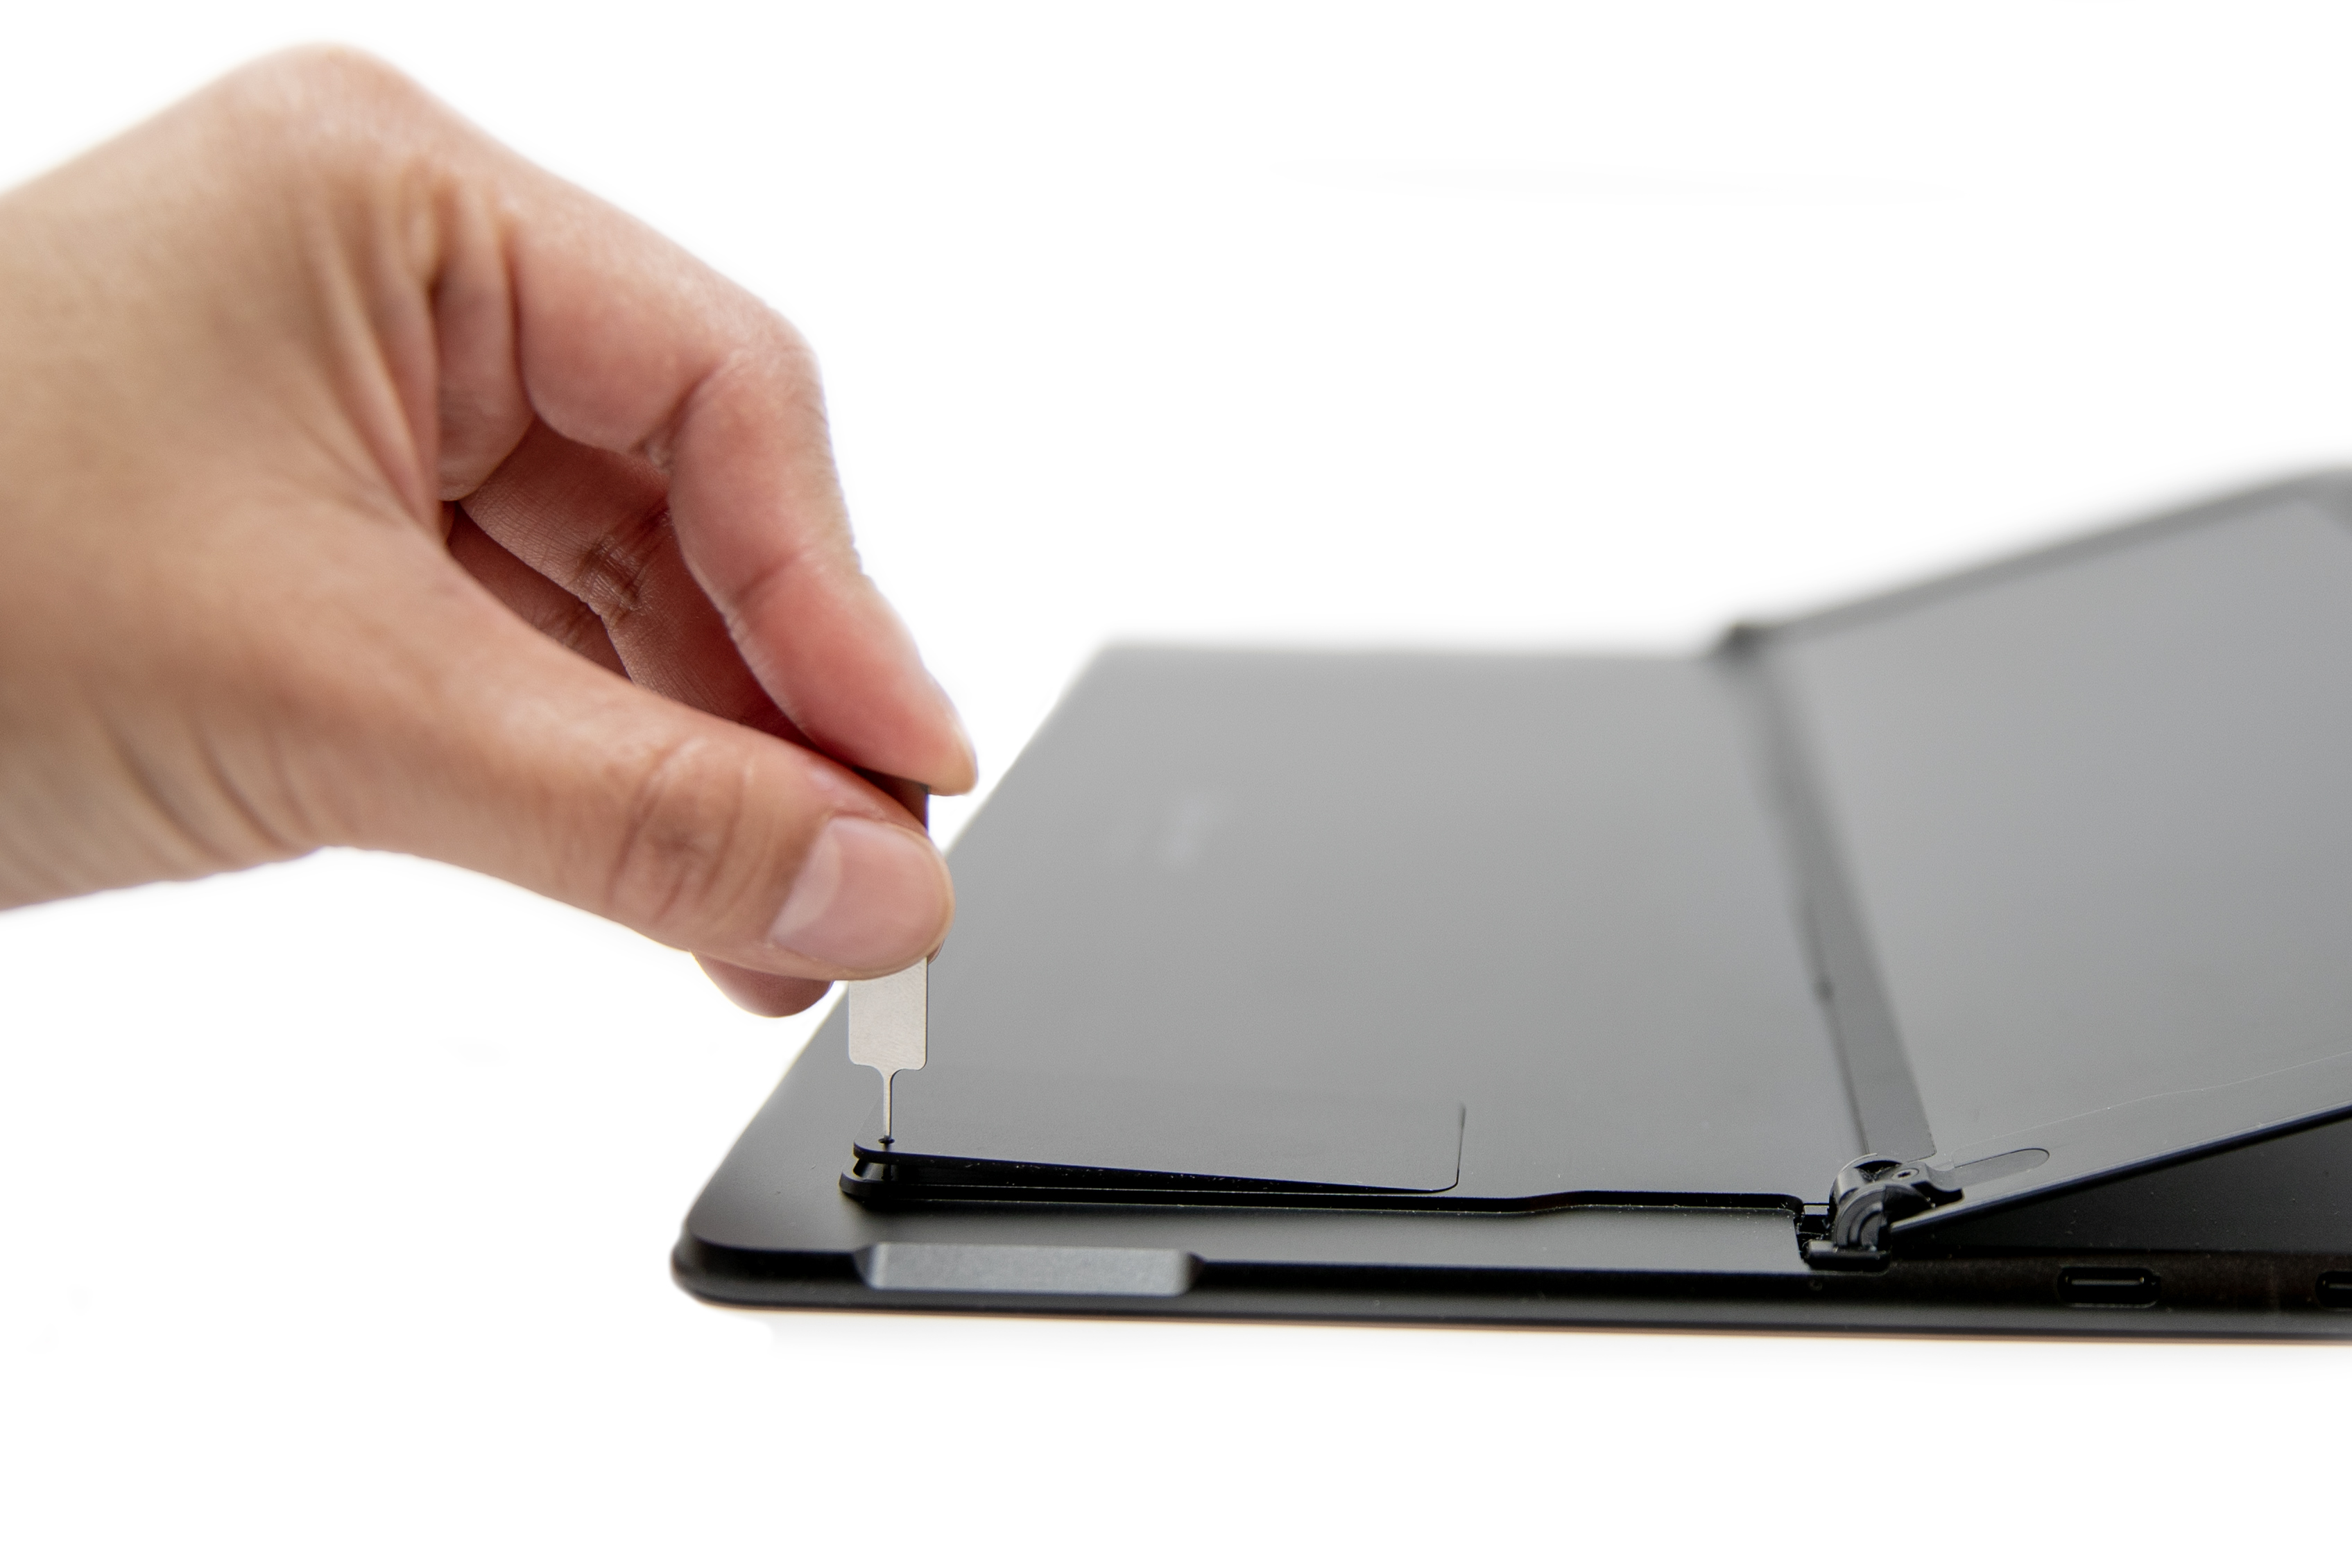 Рука людини вставила ежектор SIM-картки в Surface Pro X.